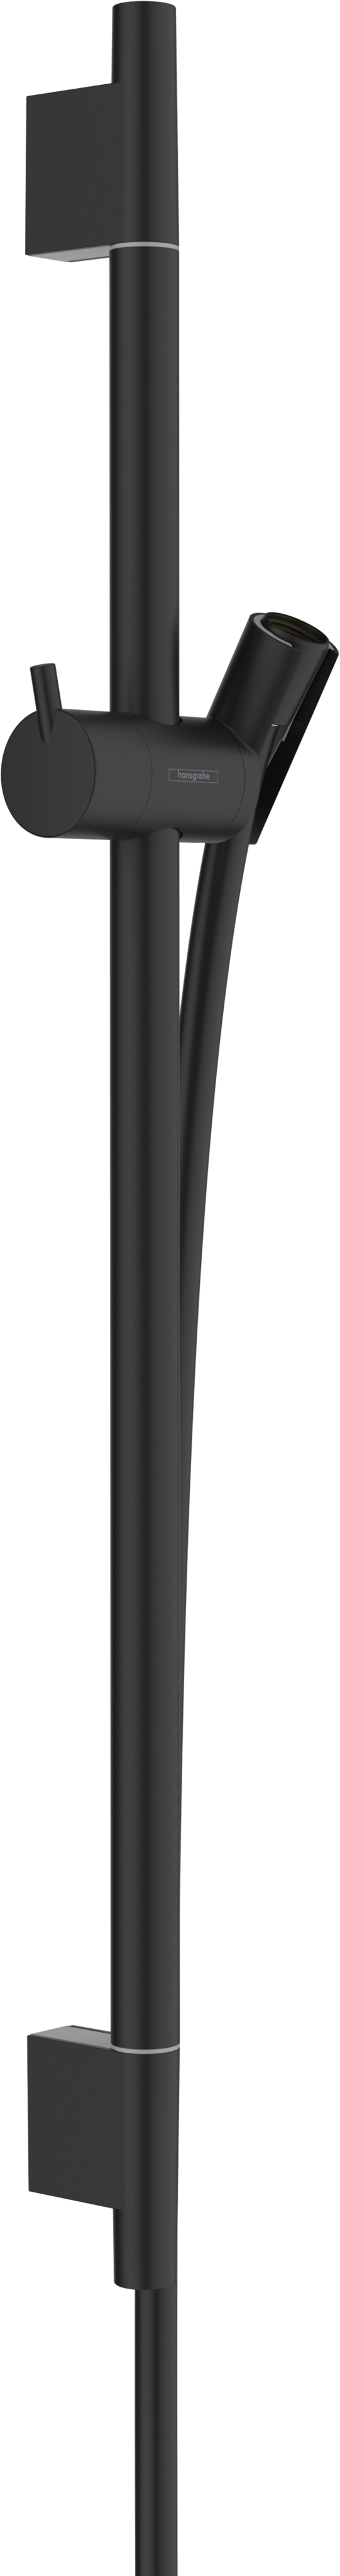 Unica Shower bar S Puro 65 cm with Isiflex shower hose 160 cm